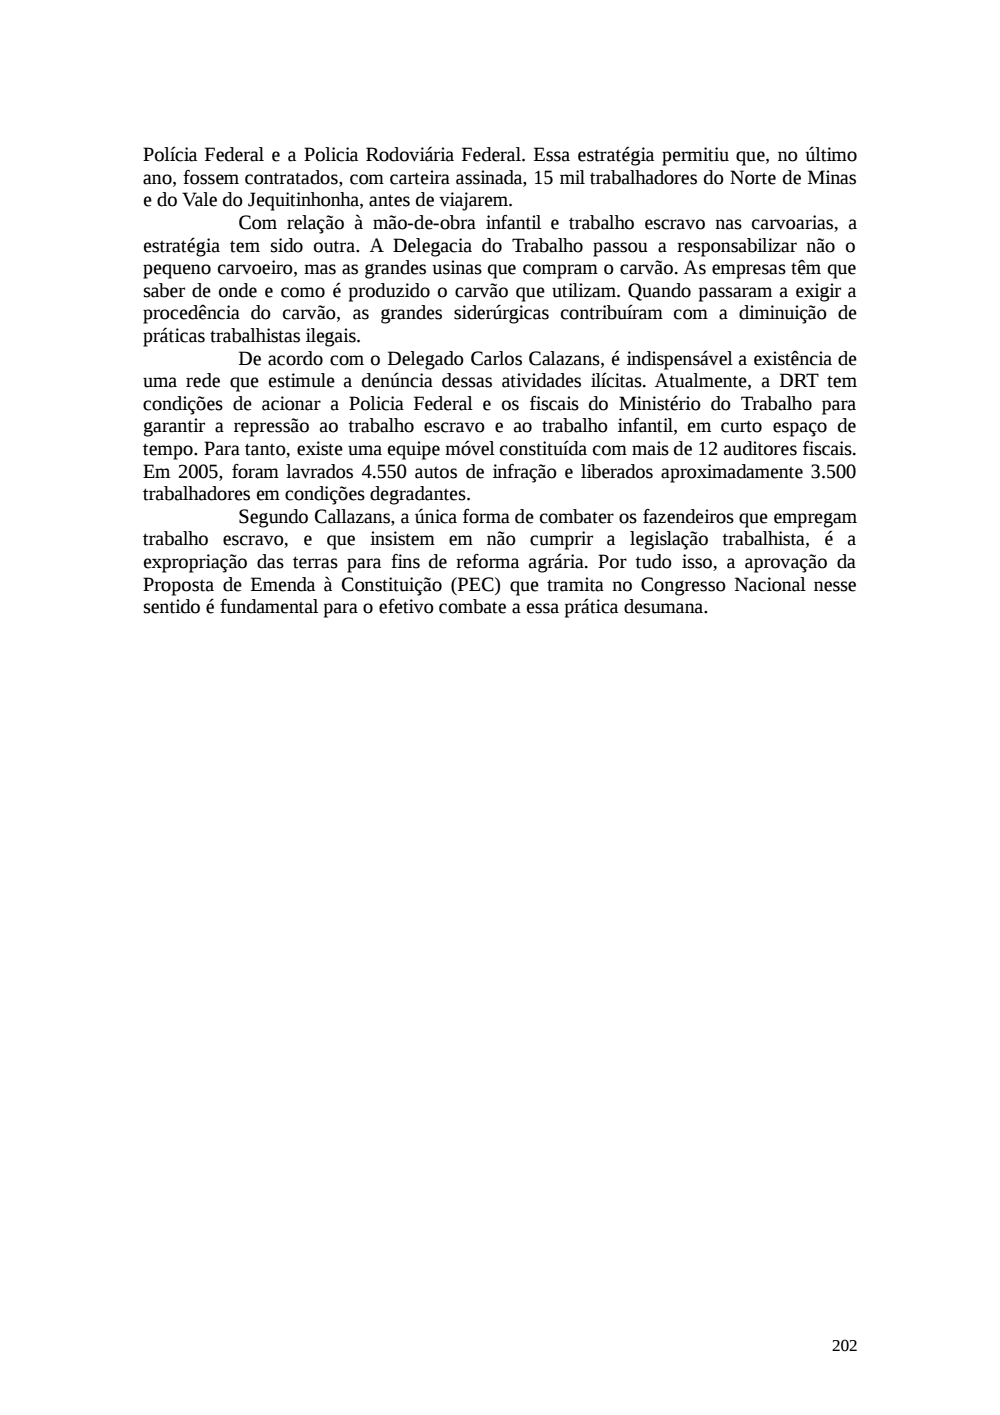 Page 202 from Relatório final da comissão